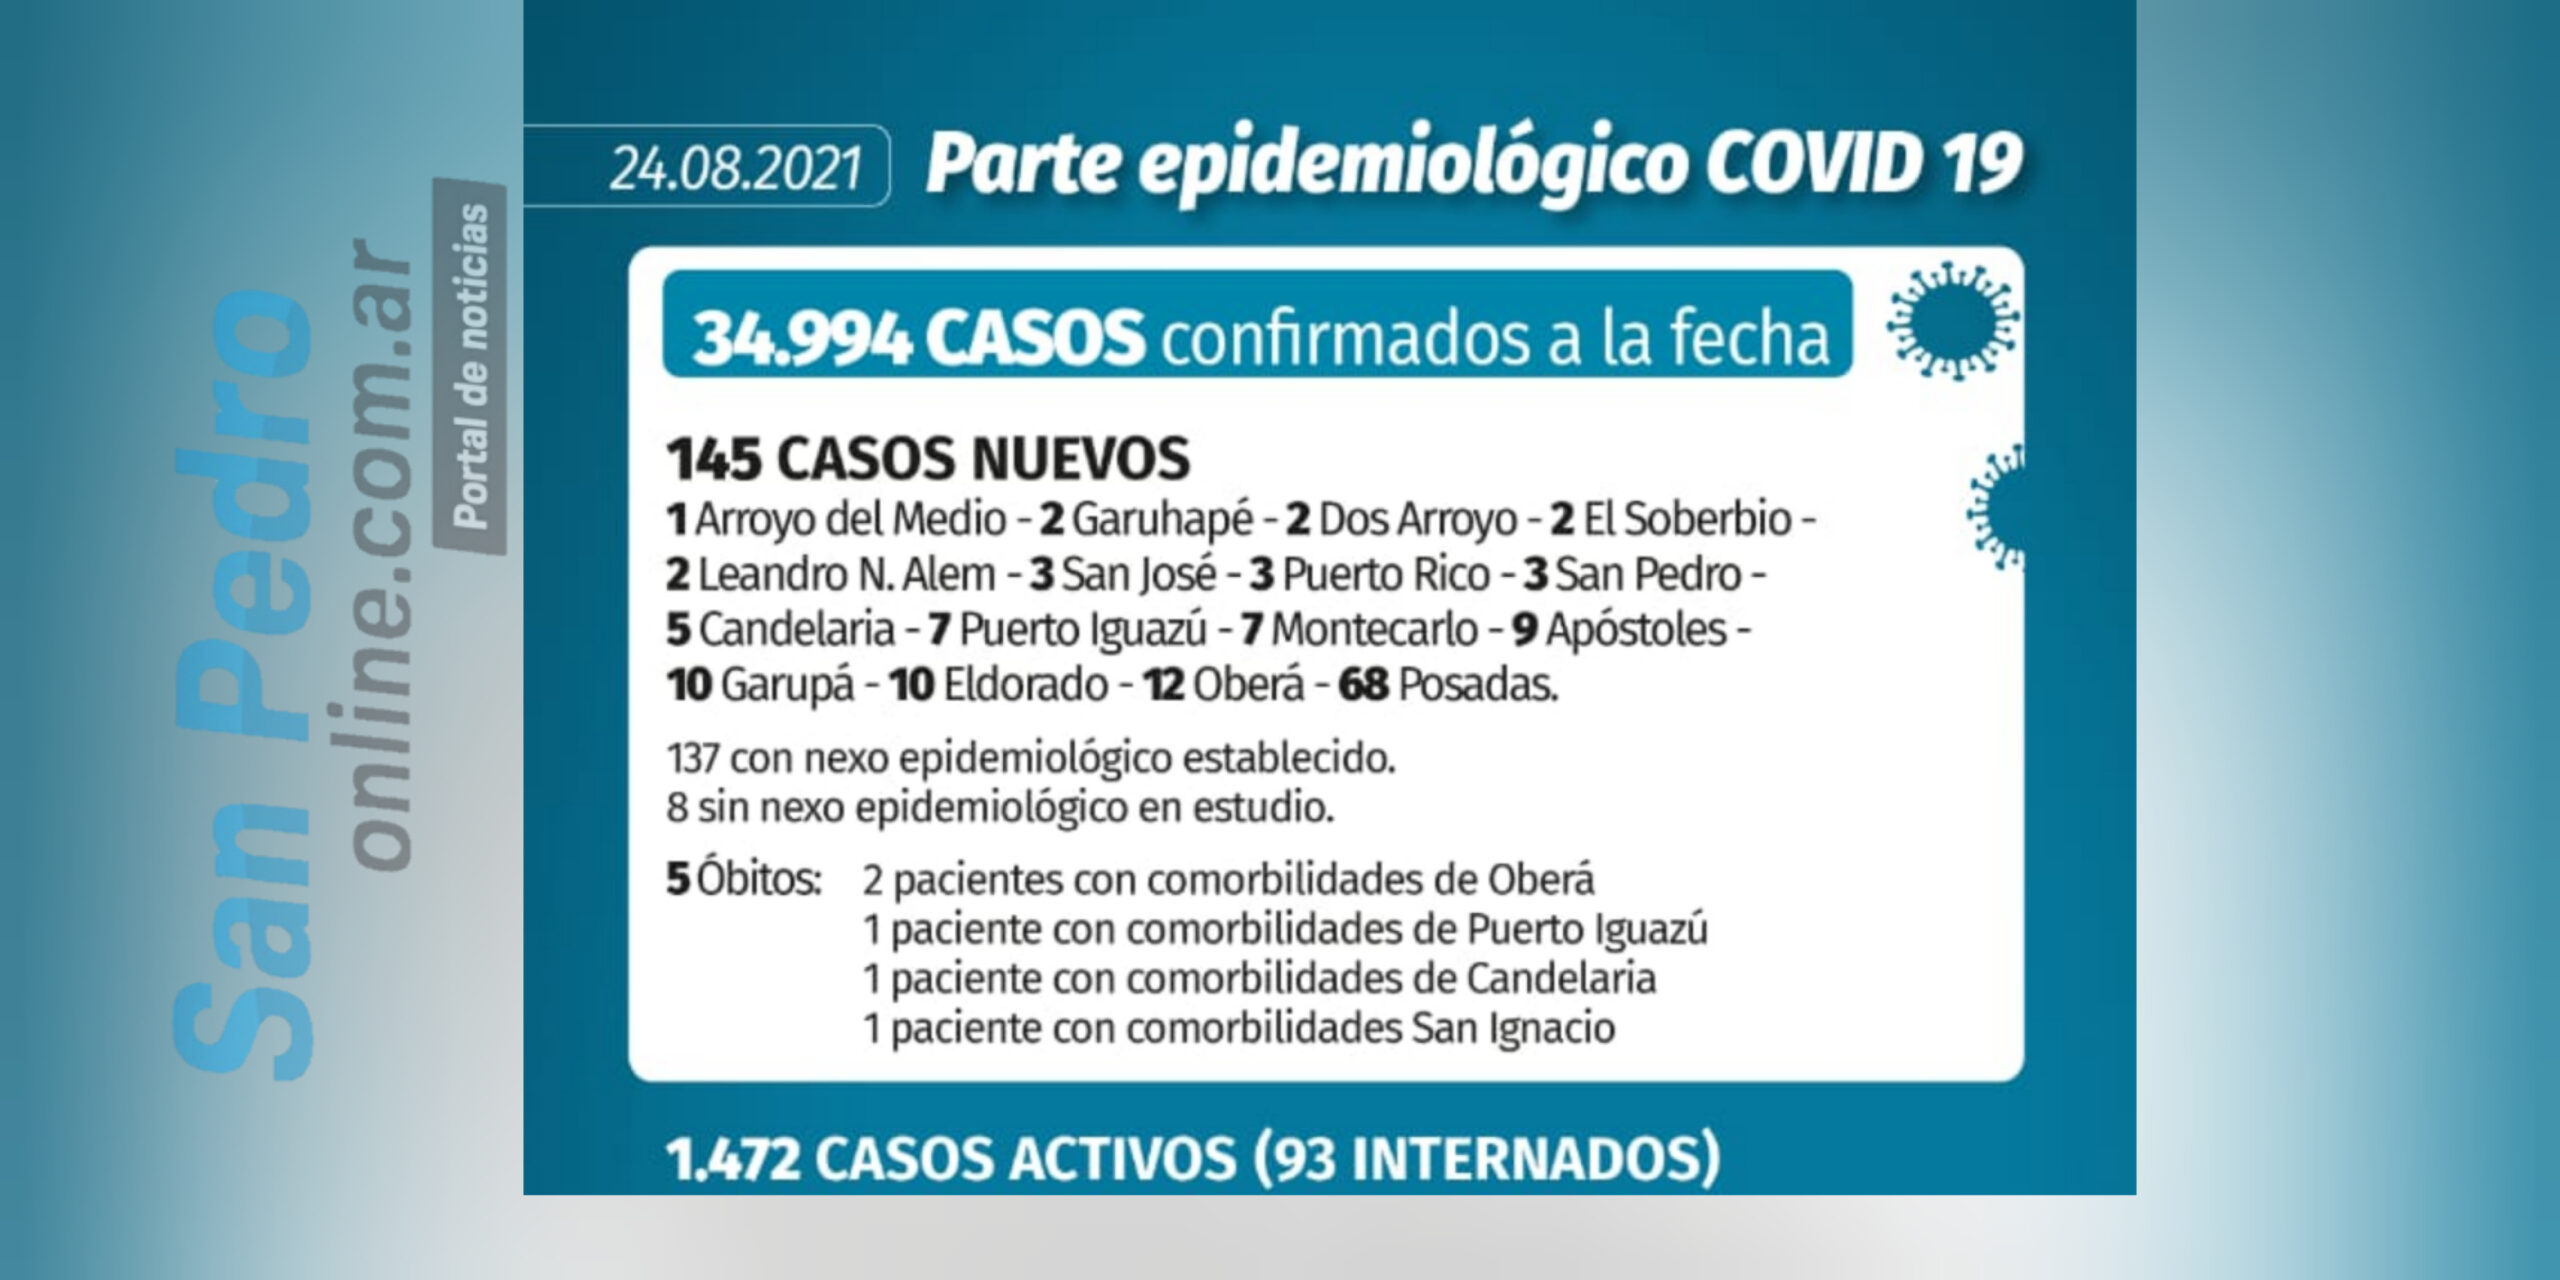 CORONAVIRUS: OTROS 3 CASOS DE COVID-19 EN SAN PEDRO (24/08/21)